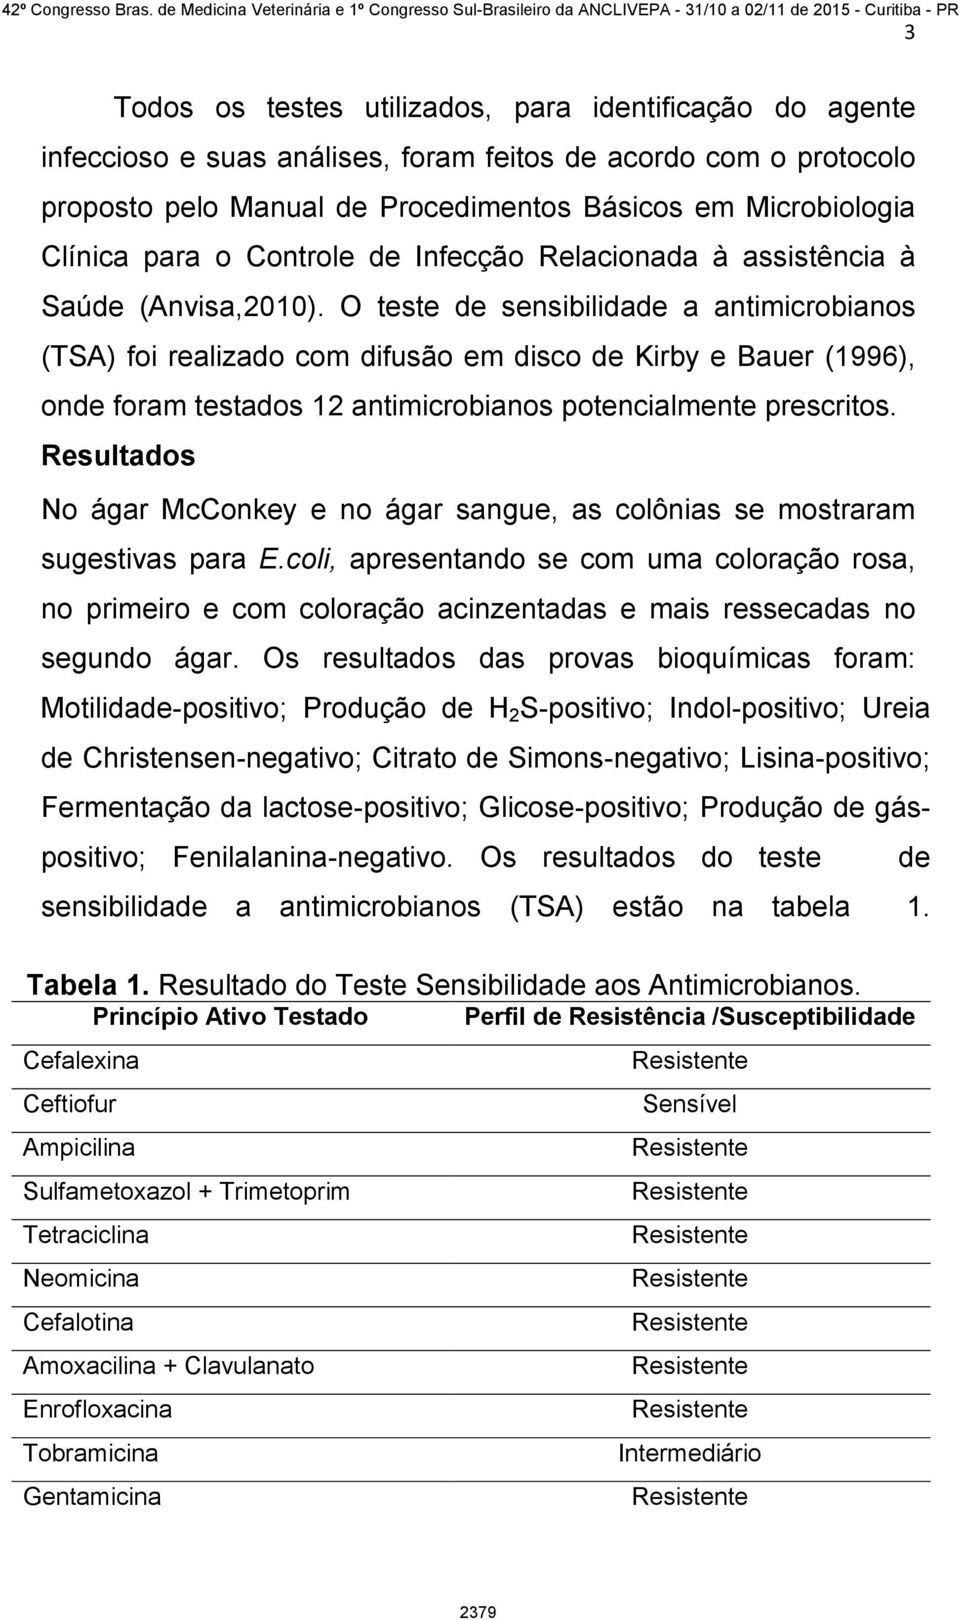 O teste de sensibilidade a antimicrobianos (TSA) foi realizado com difusão em disco de Kirby e Bauer (1996), onde foram testados 12 antimicrobianos potencialmente prescritos.